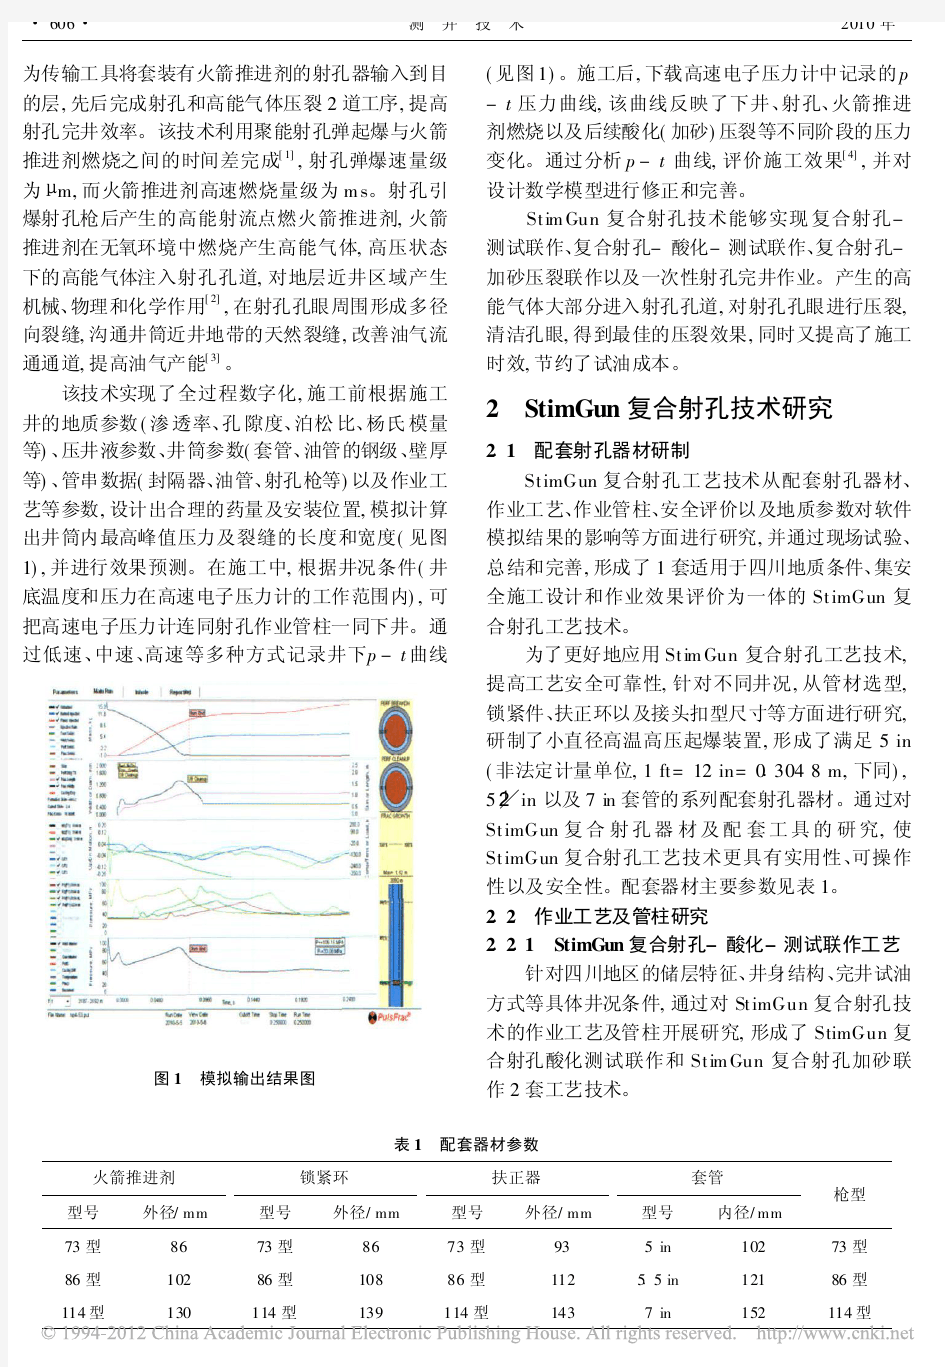 StimGun复合射孔技术在四川地区的应用研究_陈锋